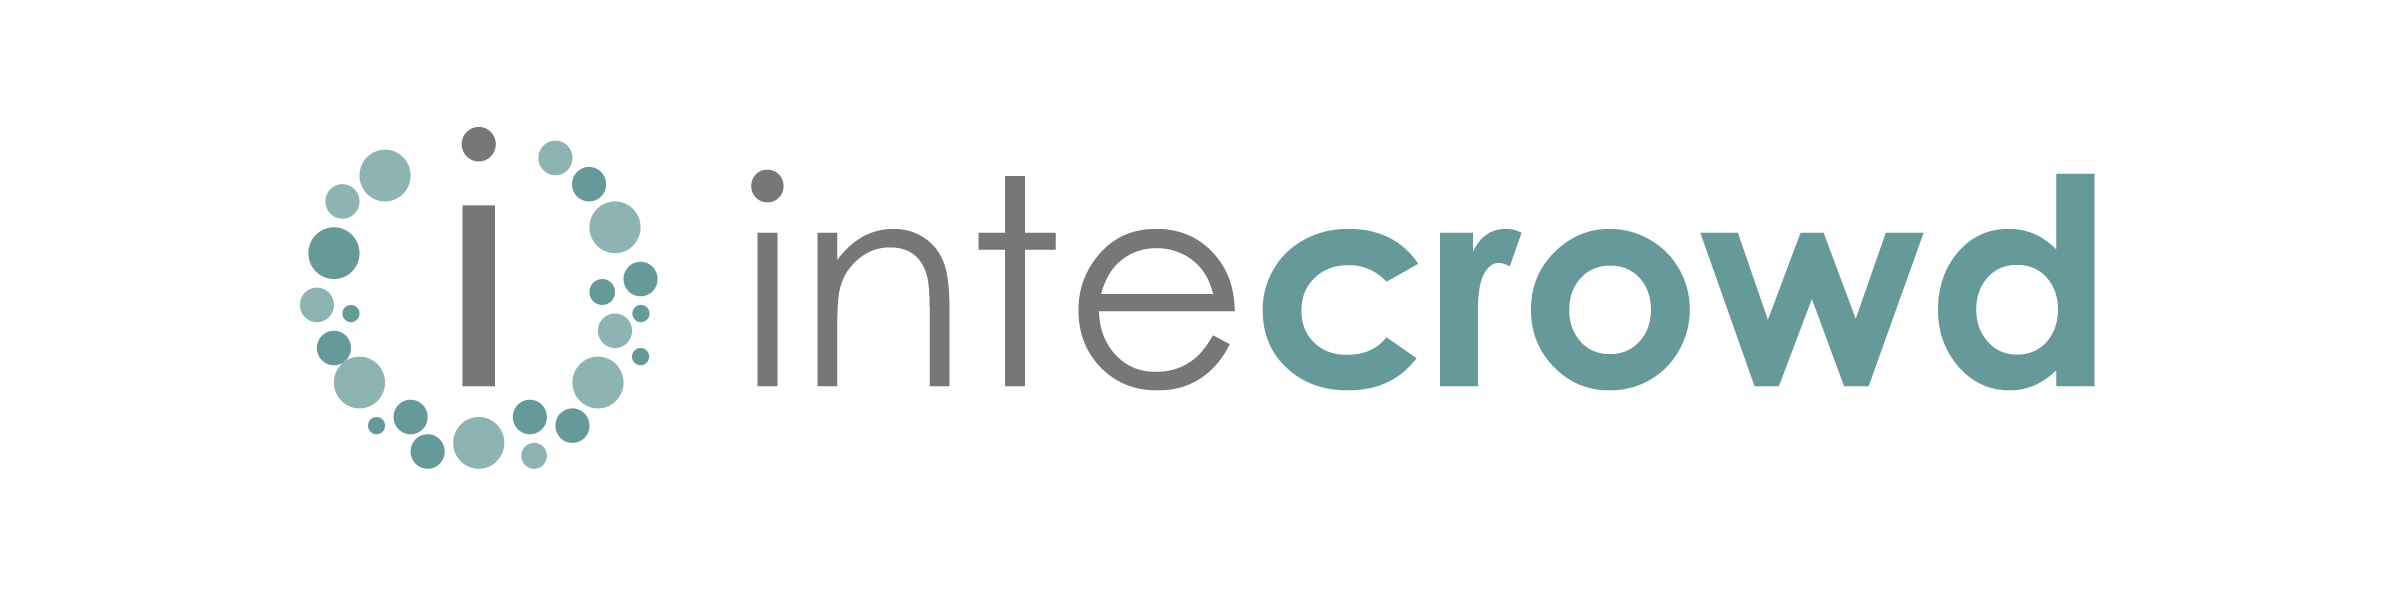 intecrowd_logo